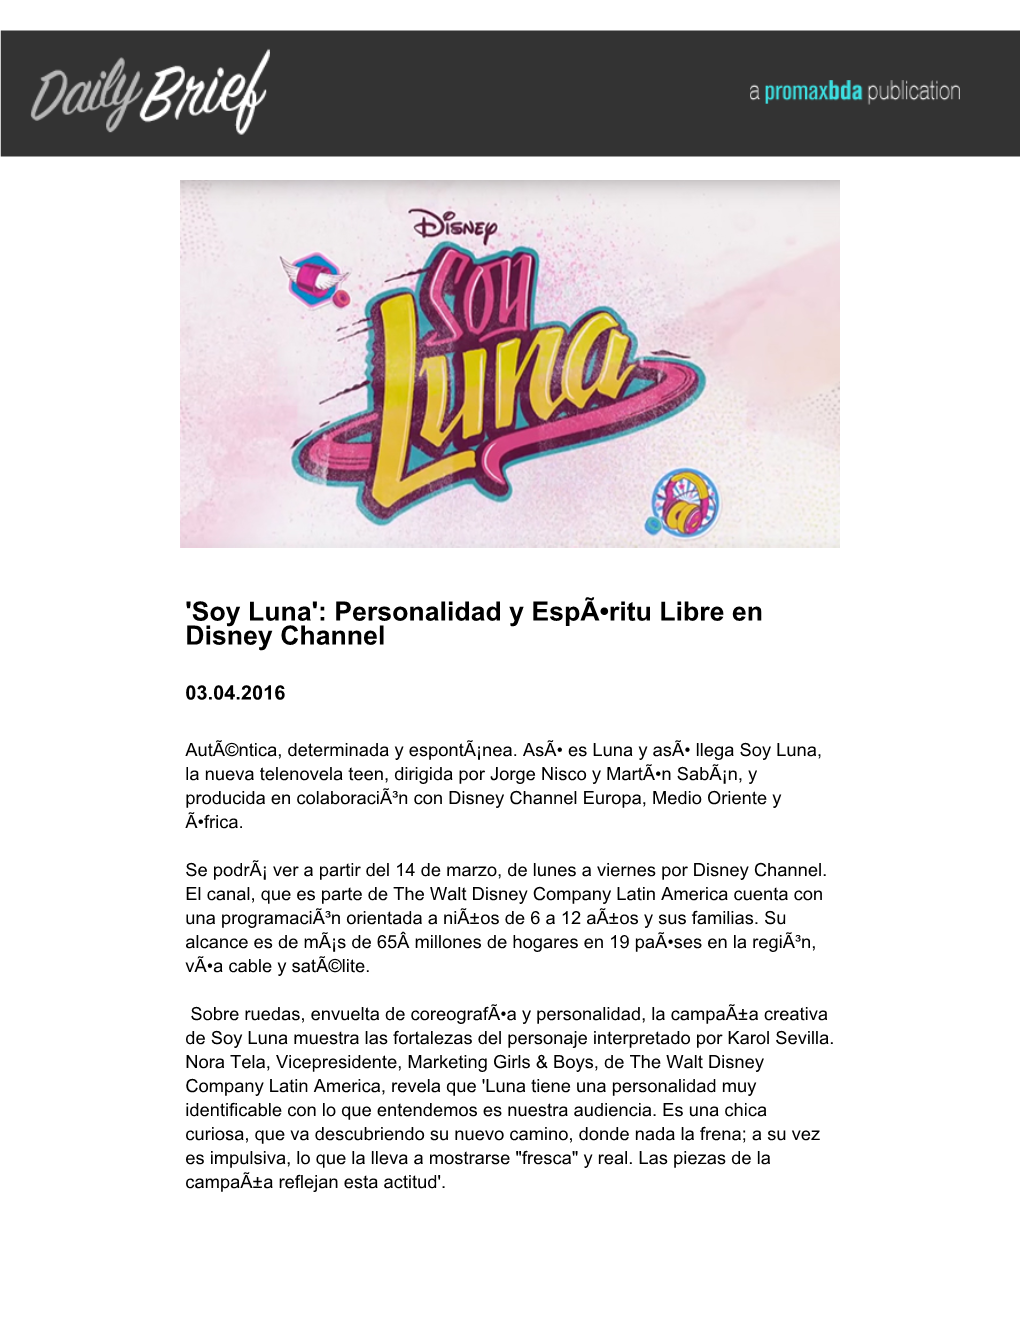 'Soy Luna': Personalidad Y Espã-Ritu Libre En Disney Channel